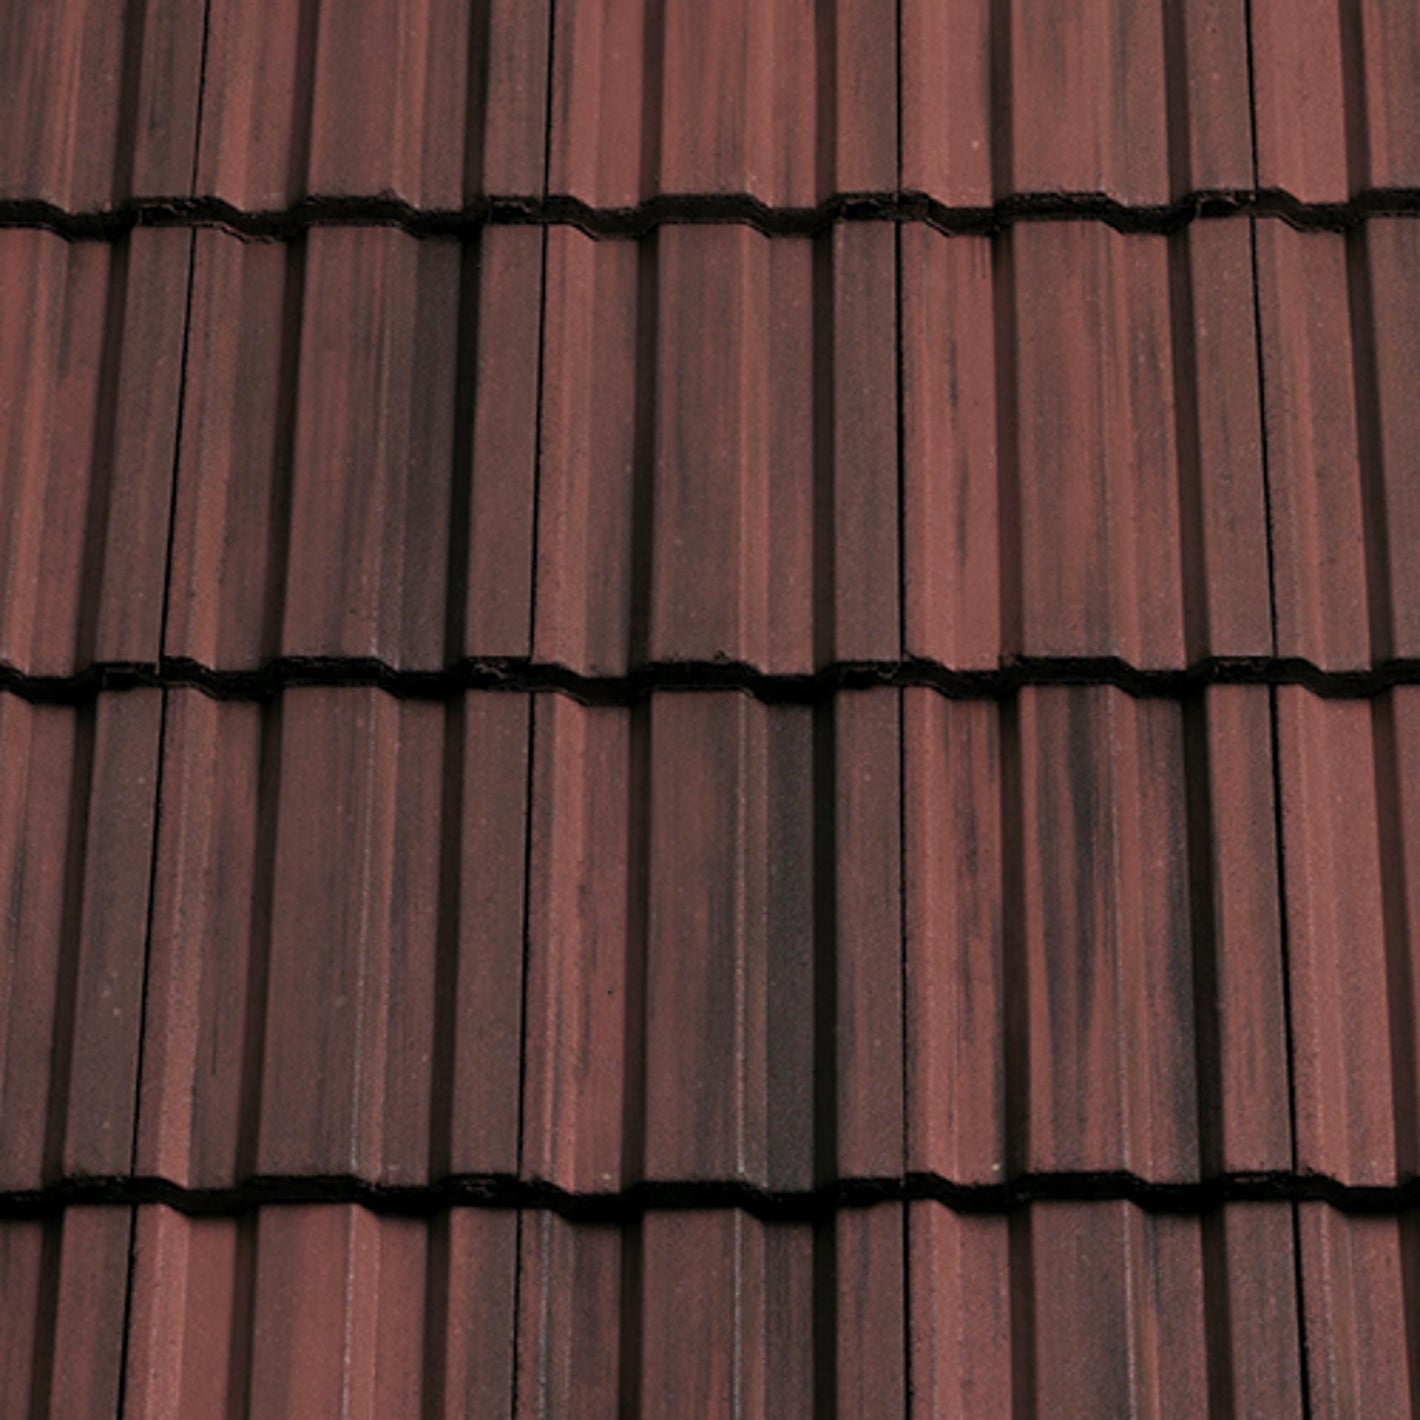 Sandtoft Standard Pattern Roof Tile - Rustic